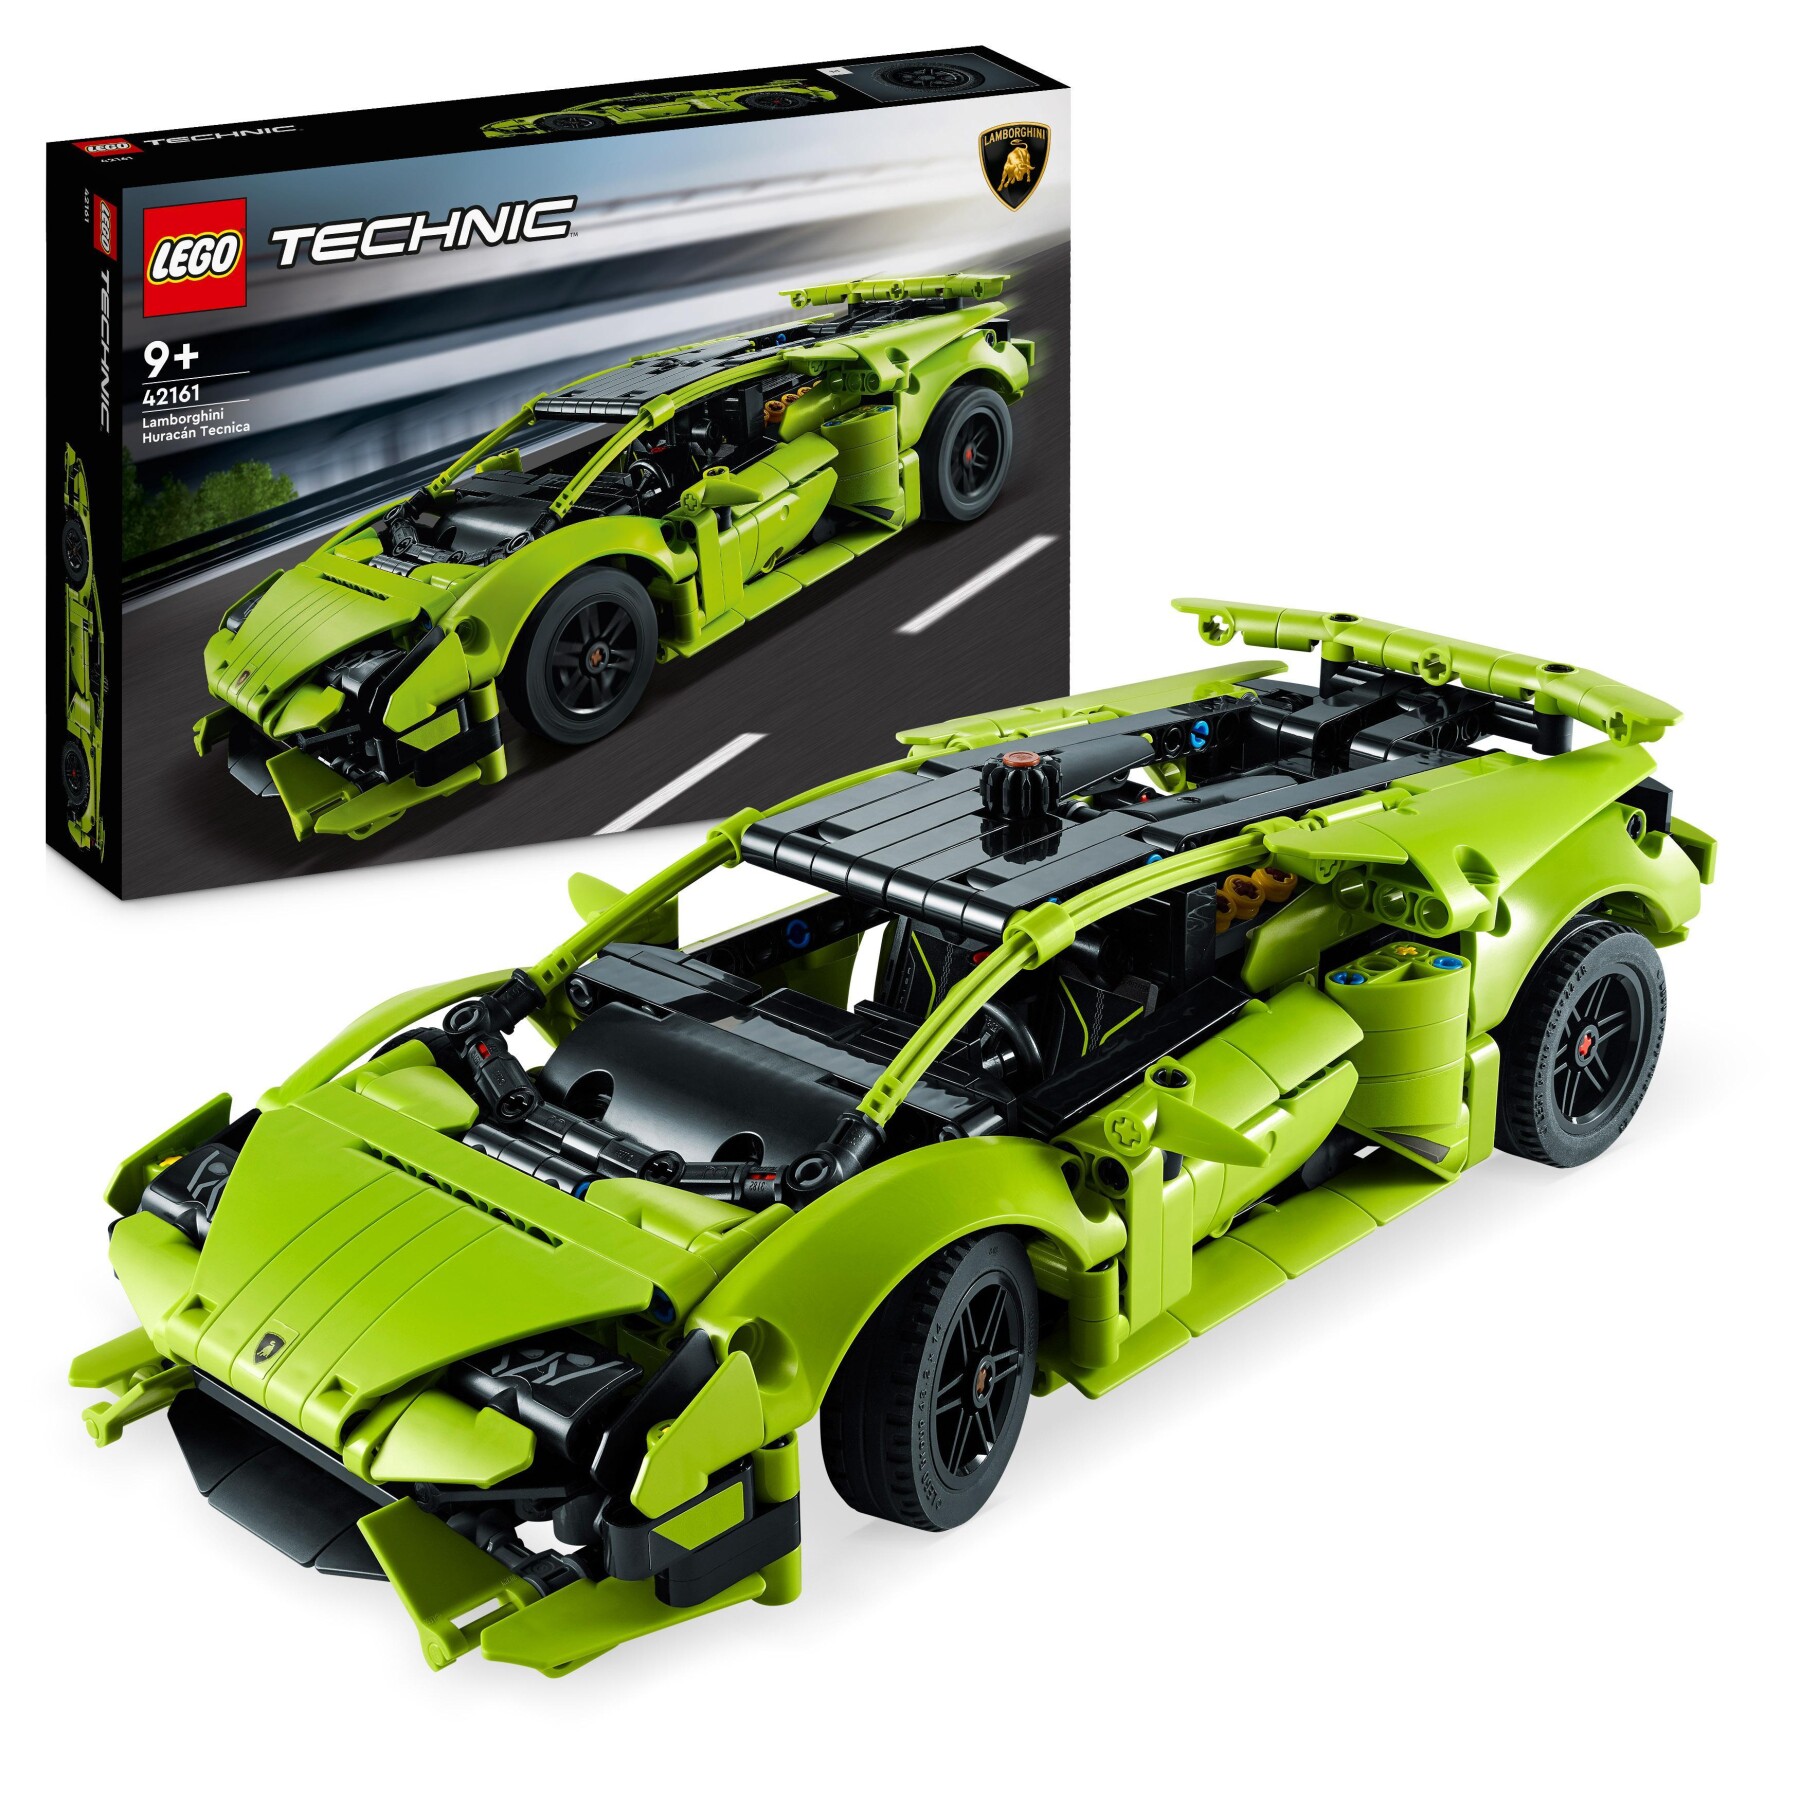 Lego technic 42161 lamborghini huracán tecnica, modellino di auto da costruire, macchina giocattolo per bambini - LEGO TECHNIC